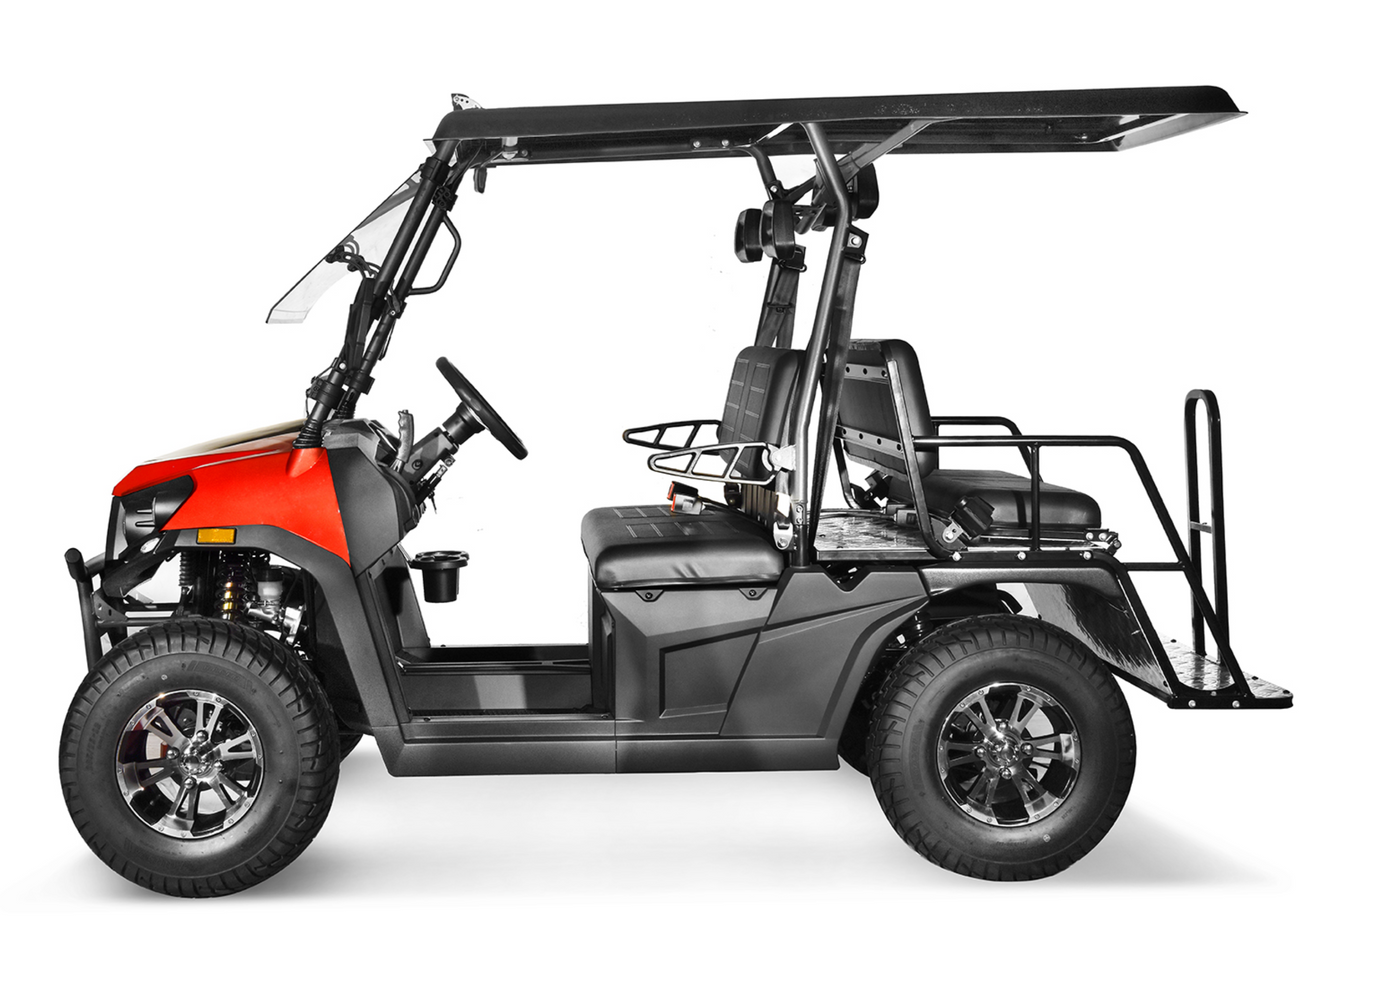 Golf Cart ROVER 200 EFI